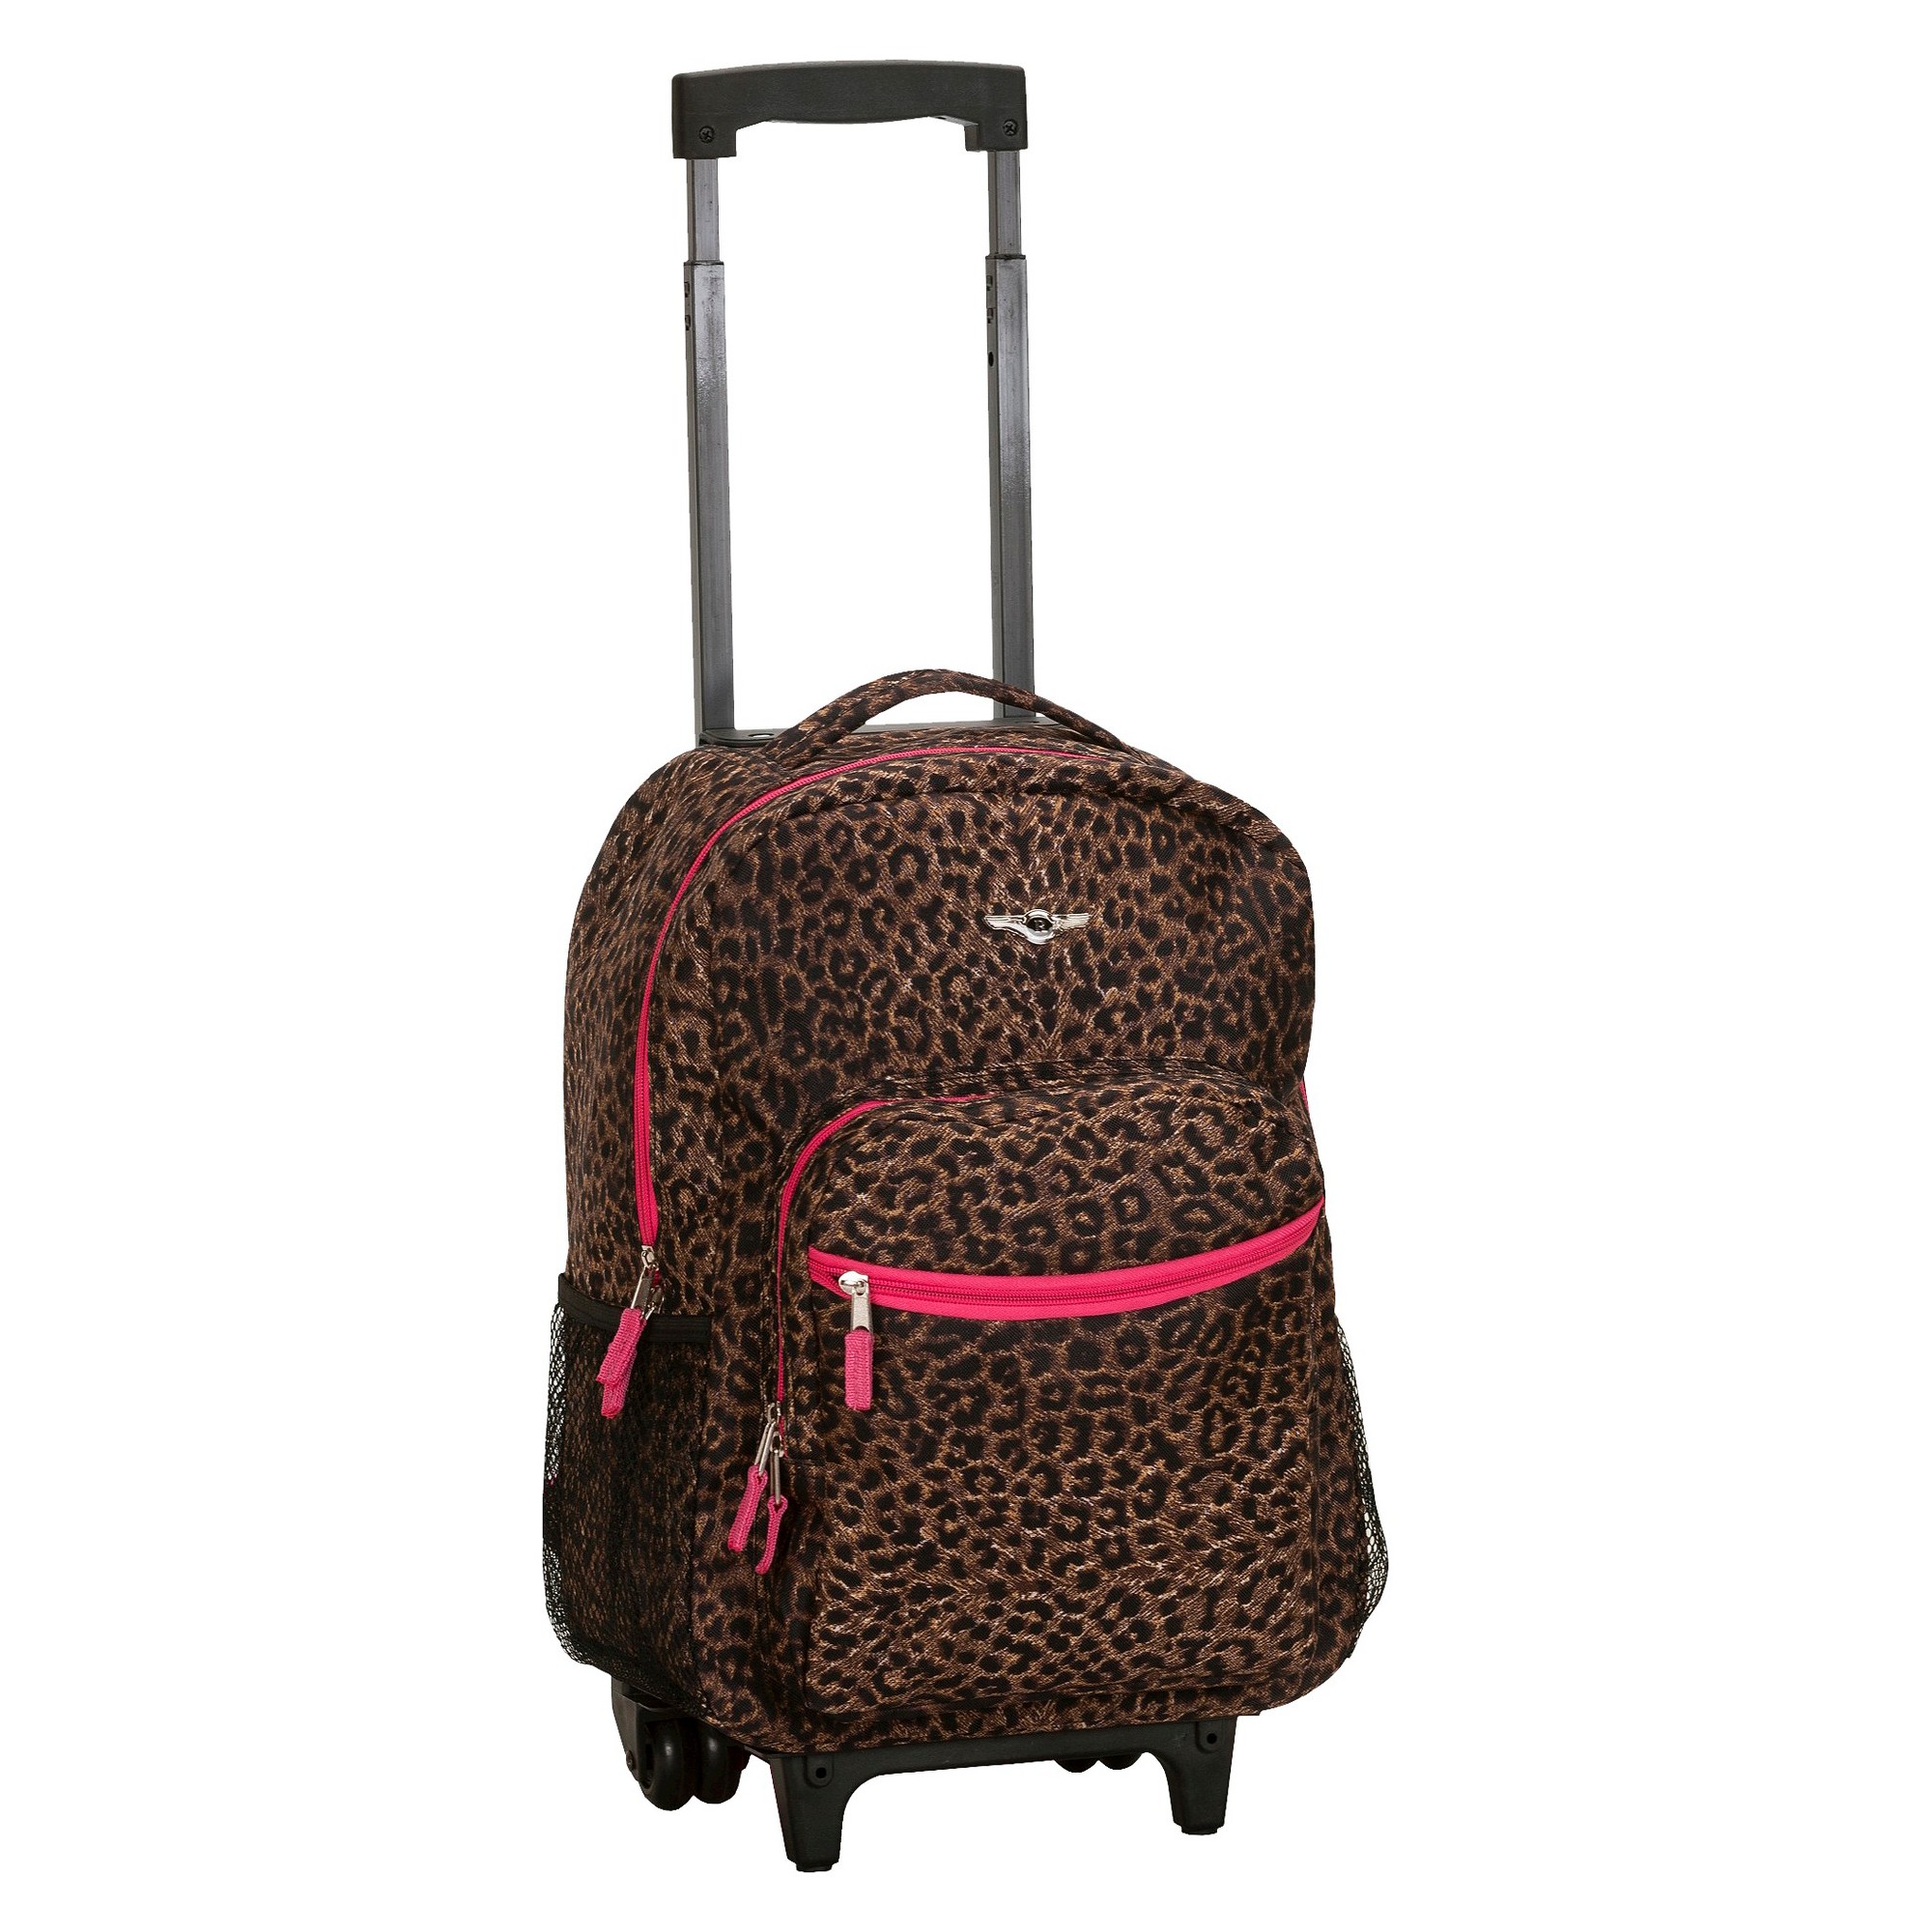 'Rockland 17'' Roadster Rolling Backpack - Pink Leopard, Size: Large'